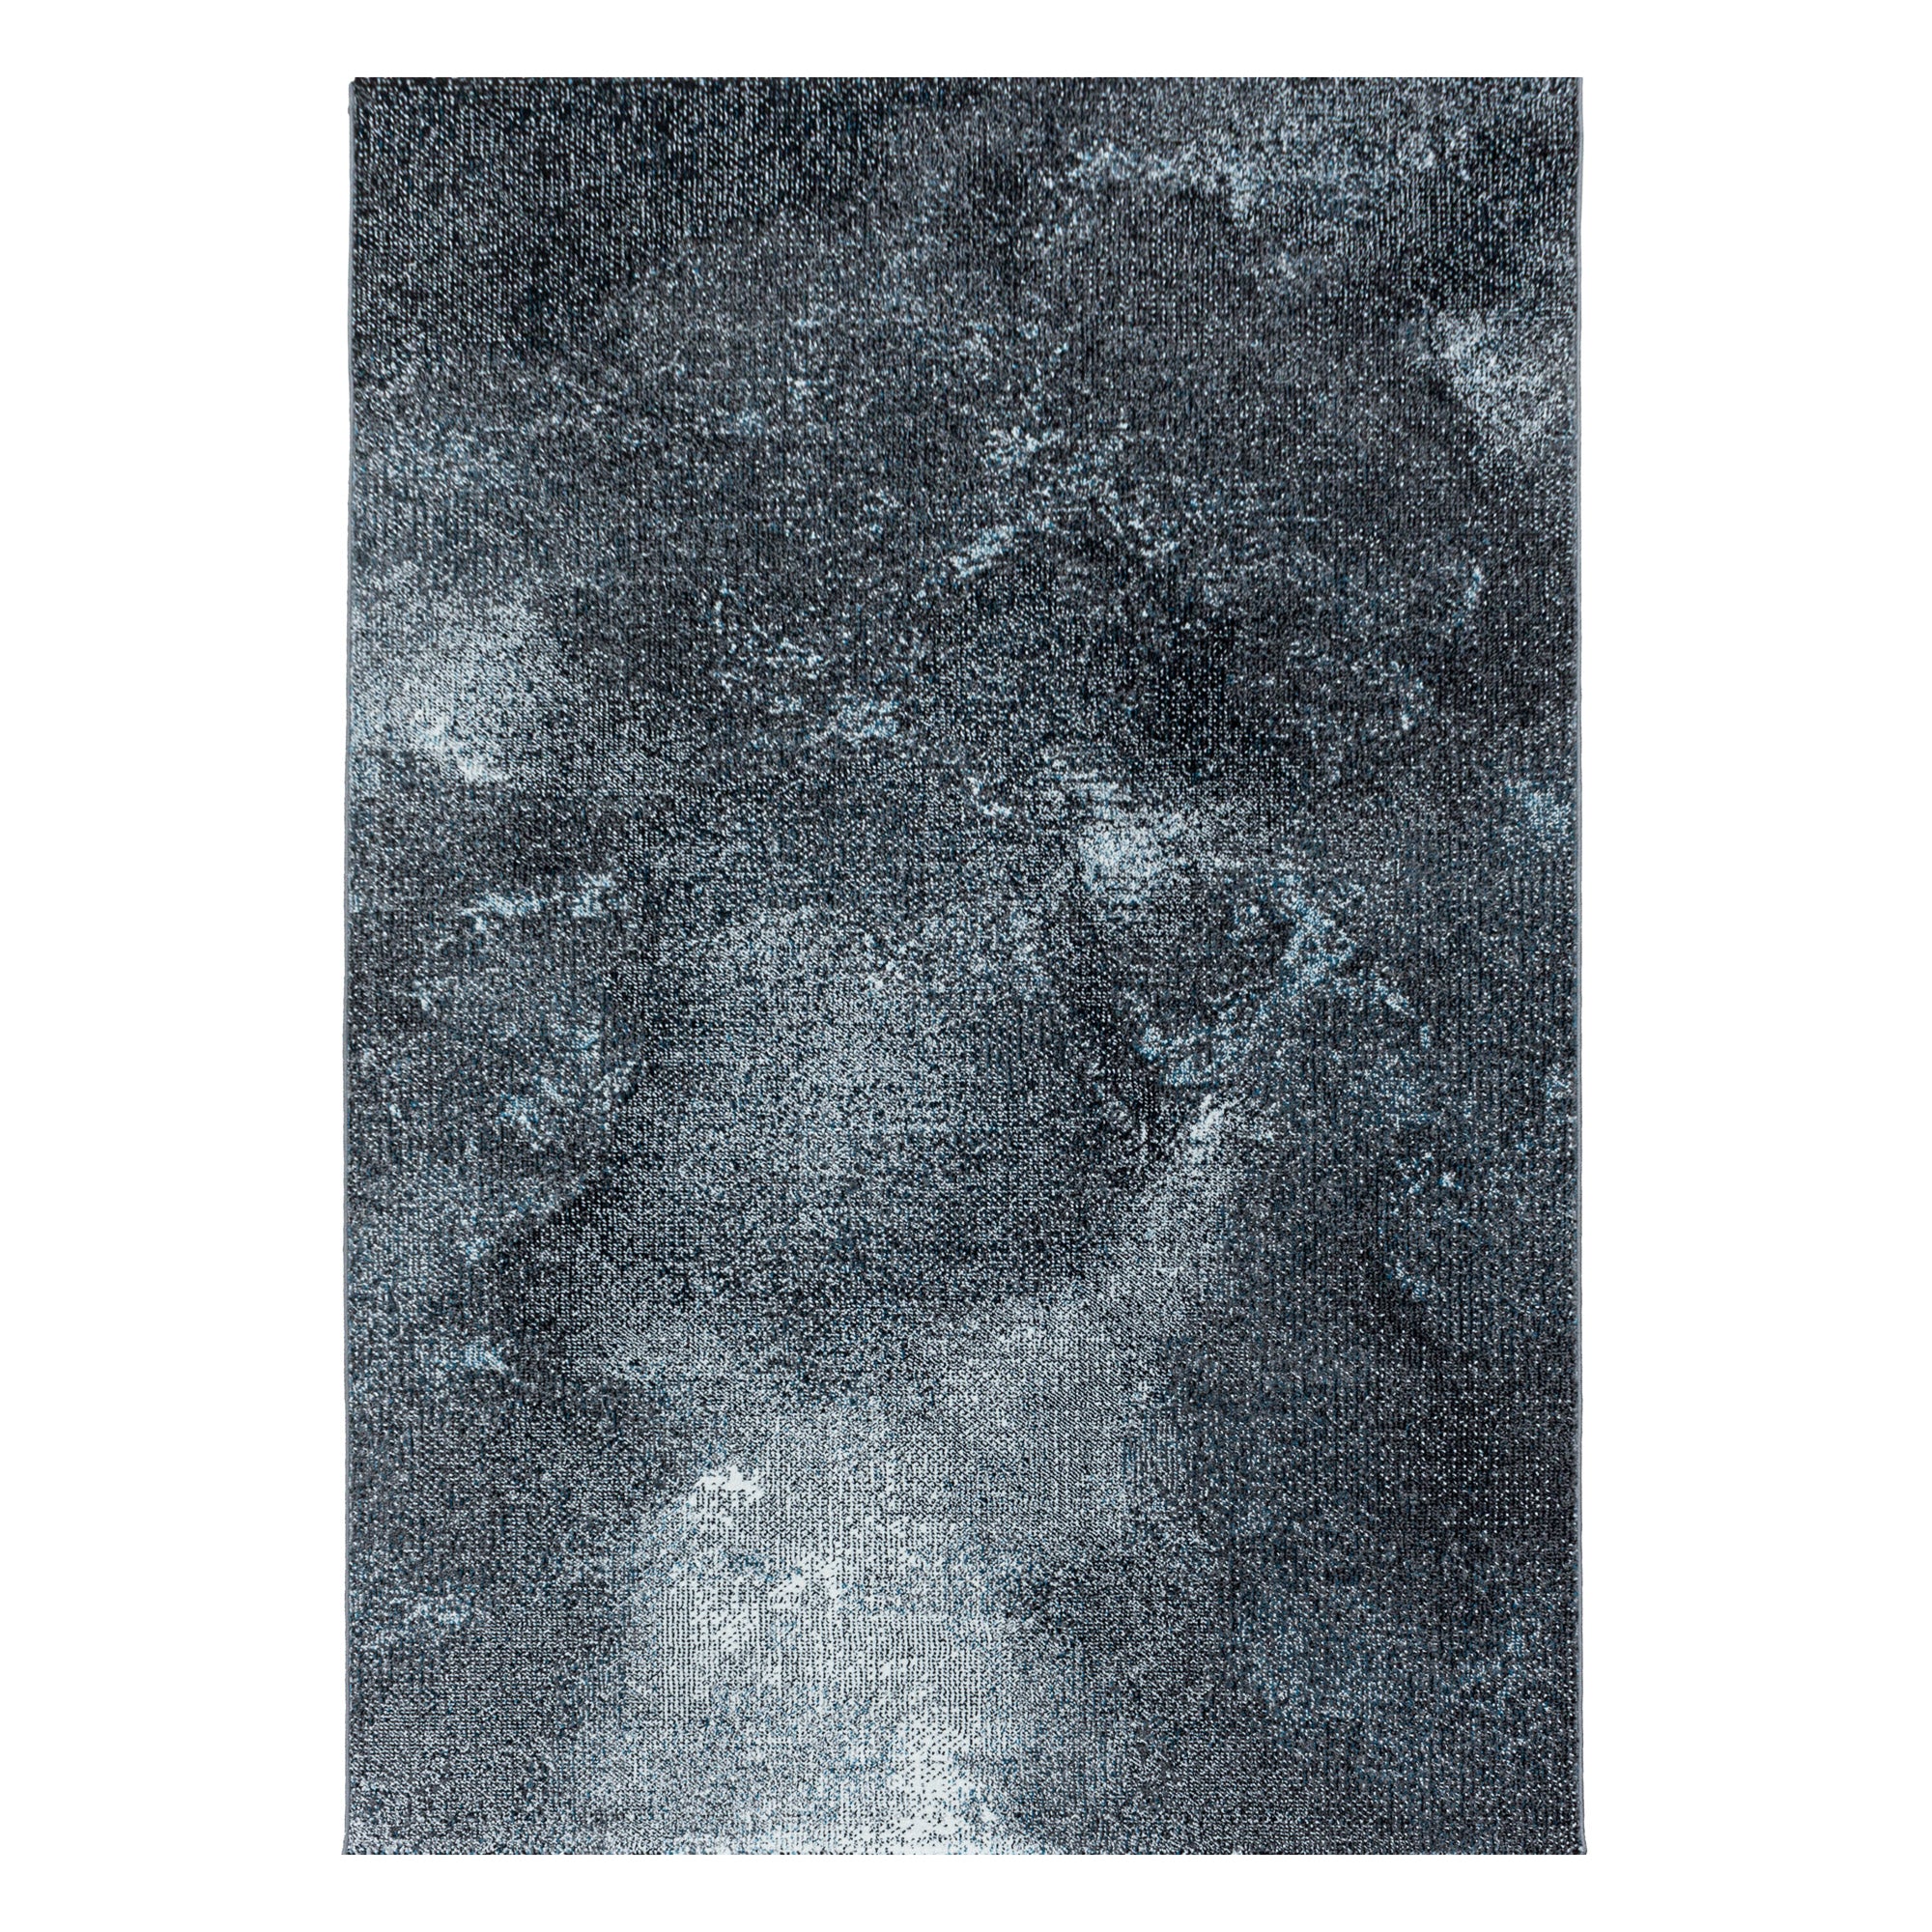 Kurzflor Teppich Blau Grau Wolken Muster Marmoriert Wohnzimmerteppich Weich